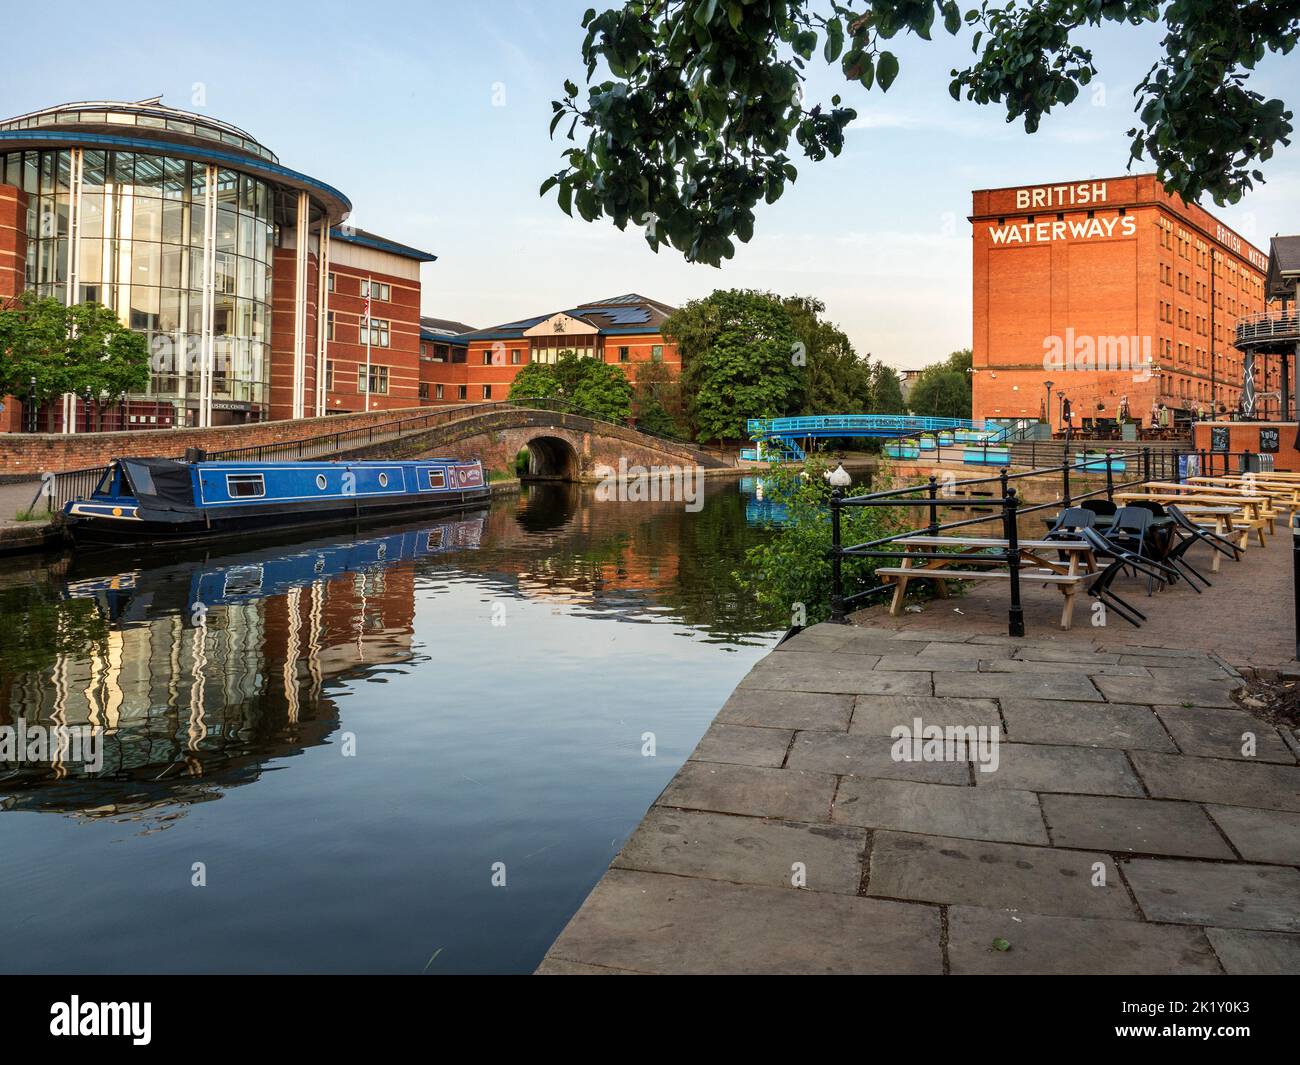 Nottingham Canal and old British Waterways building at sunrise Nottingham Nottinghamshire England Stock Photo